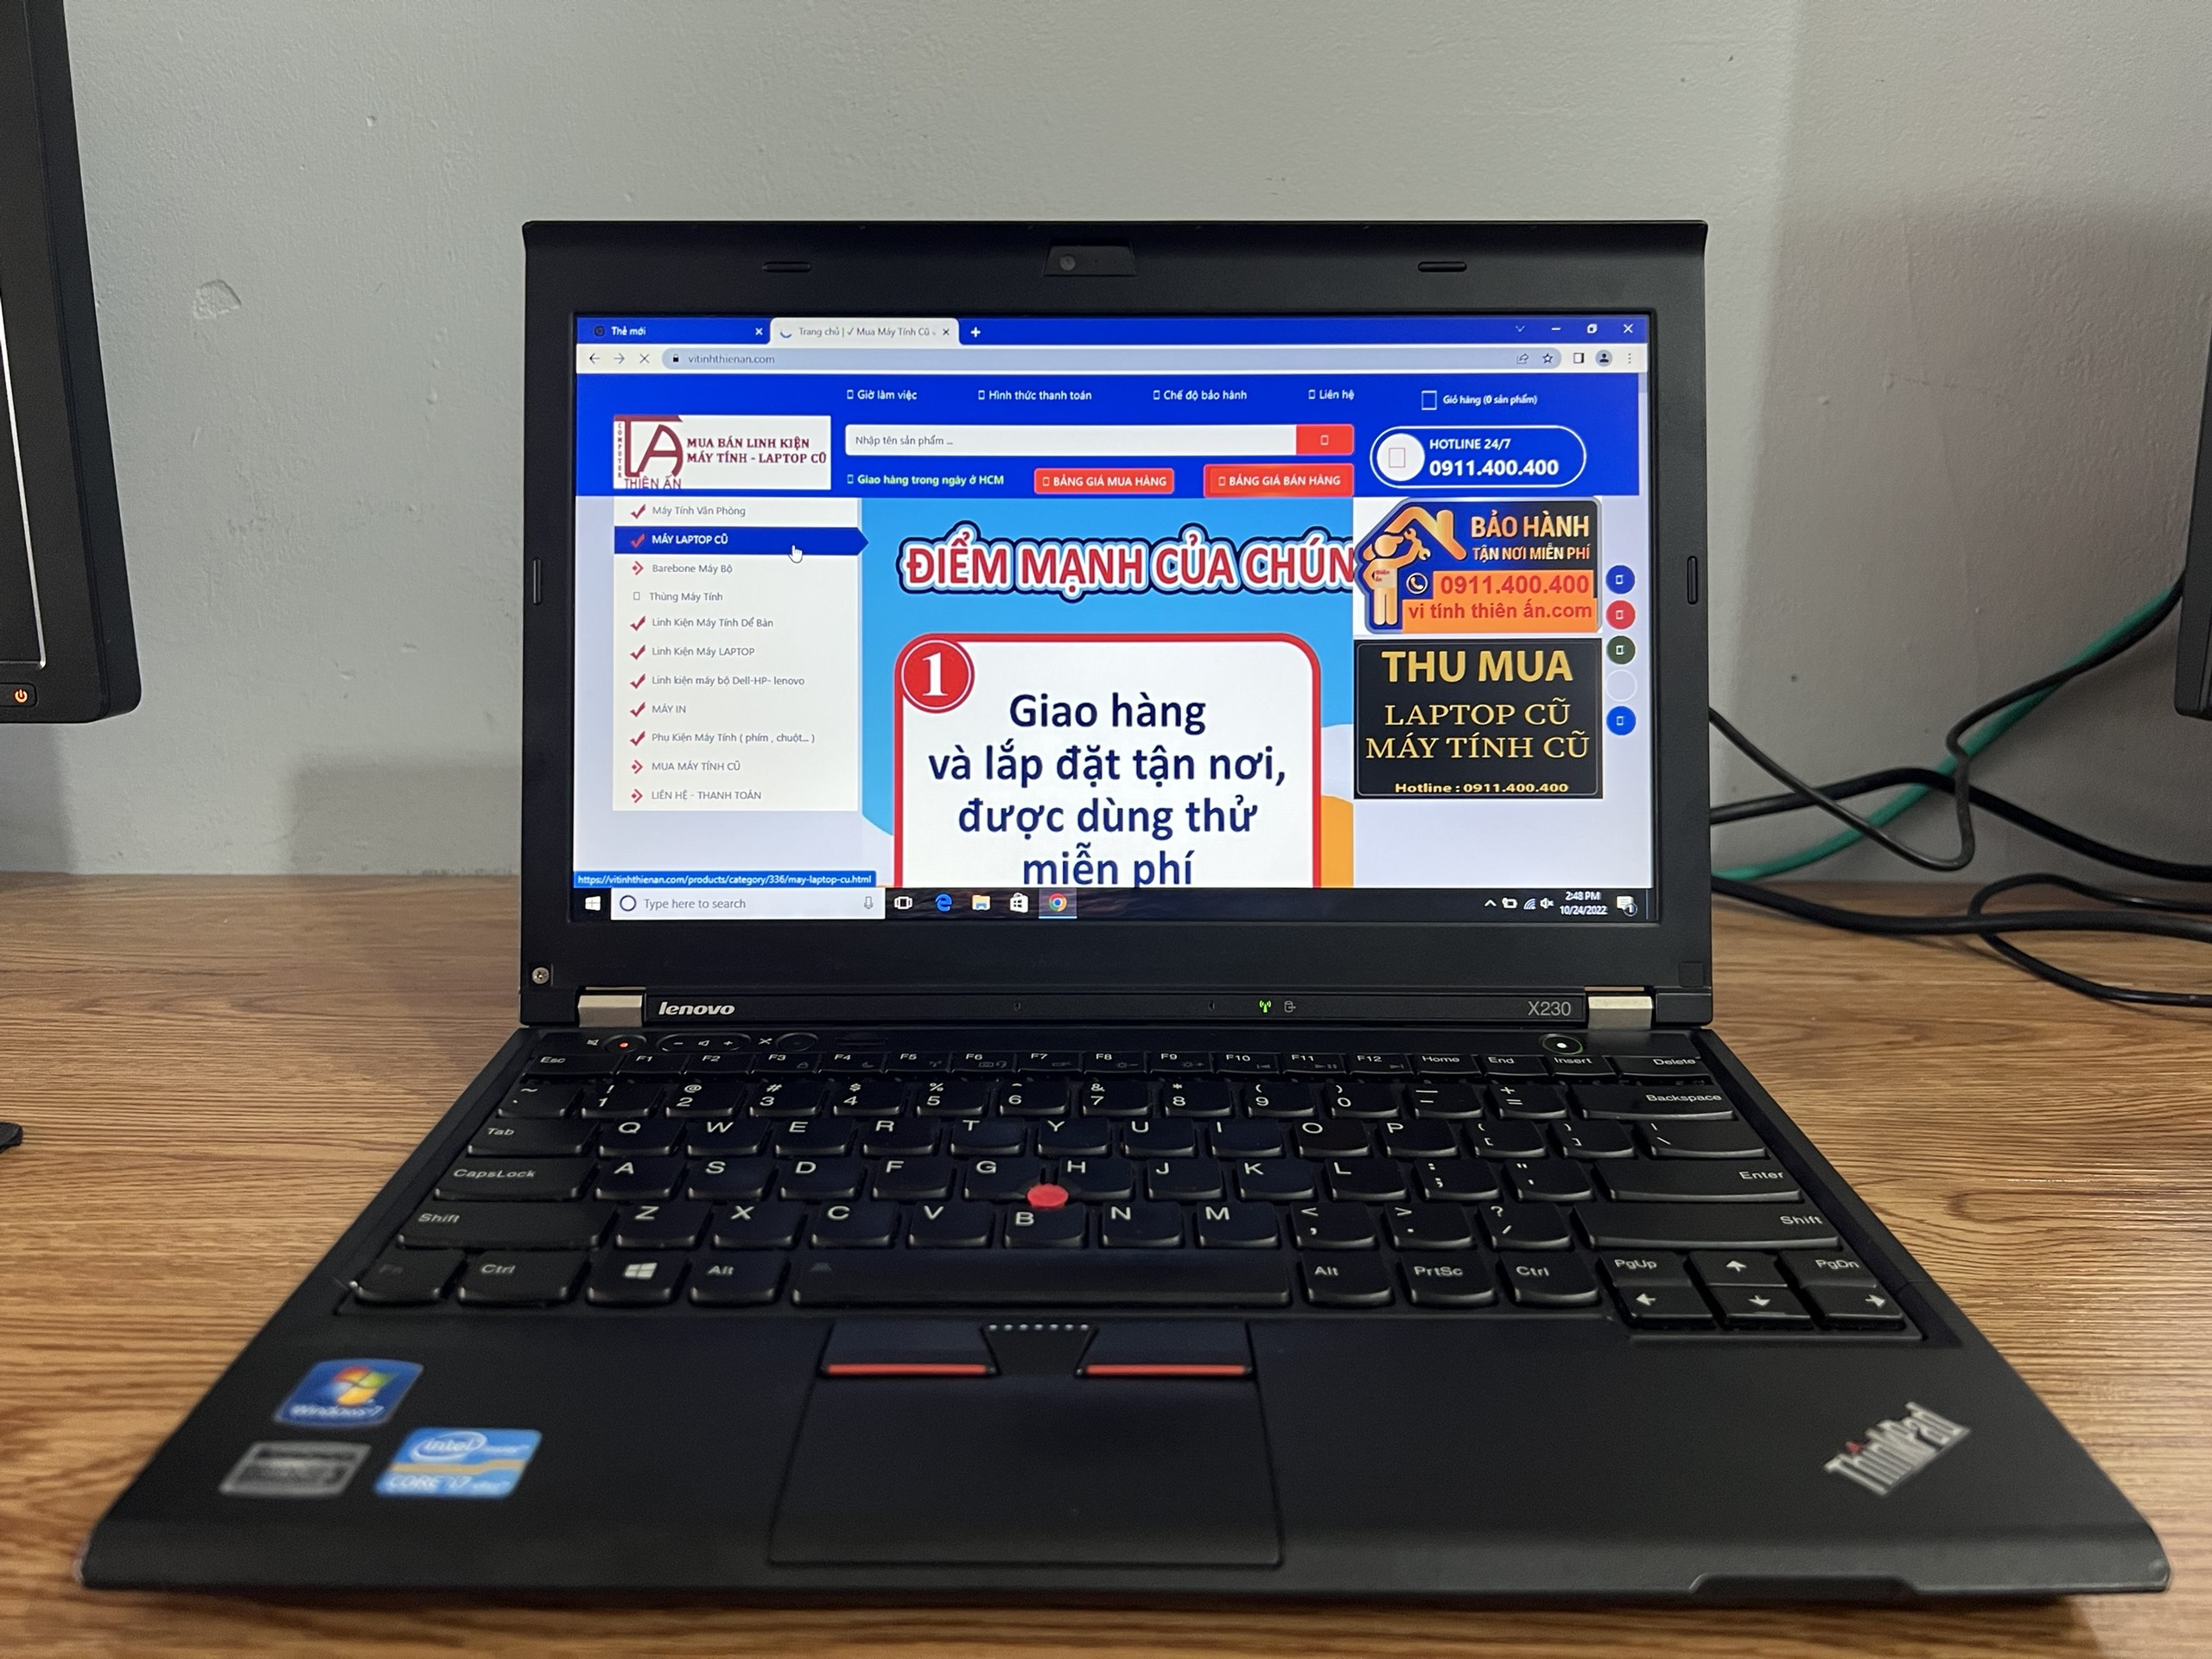 Laptop Asus X455L i3 thế hệ 5 giá rẻ